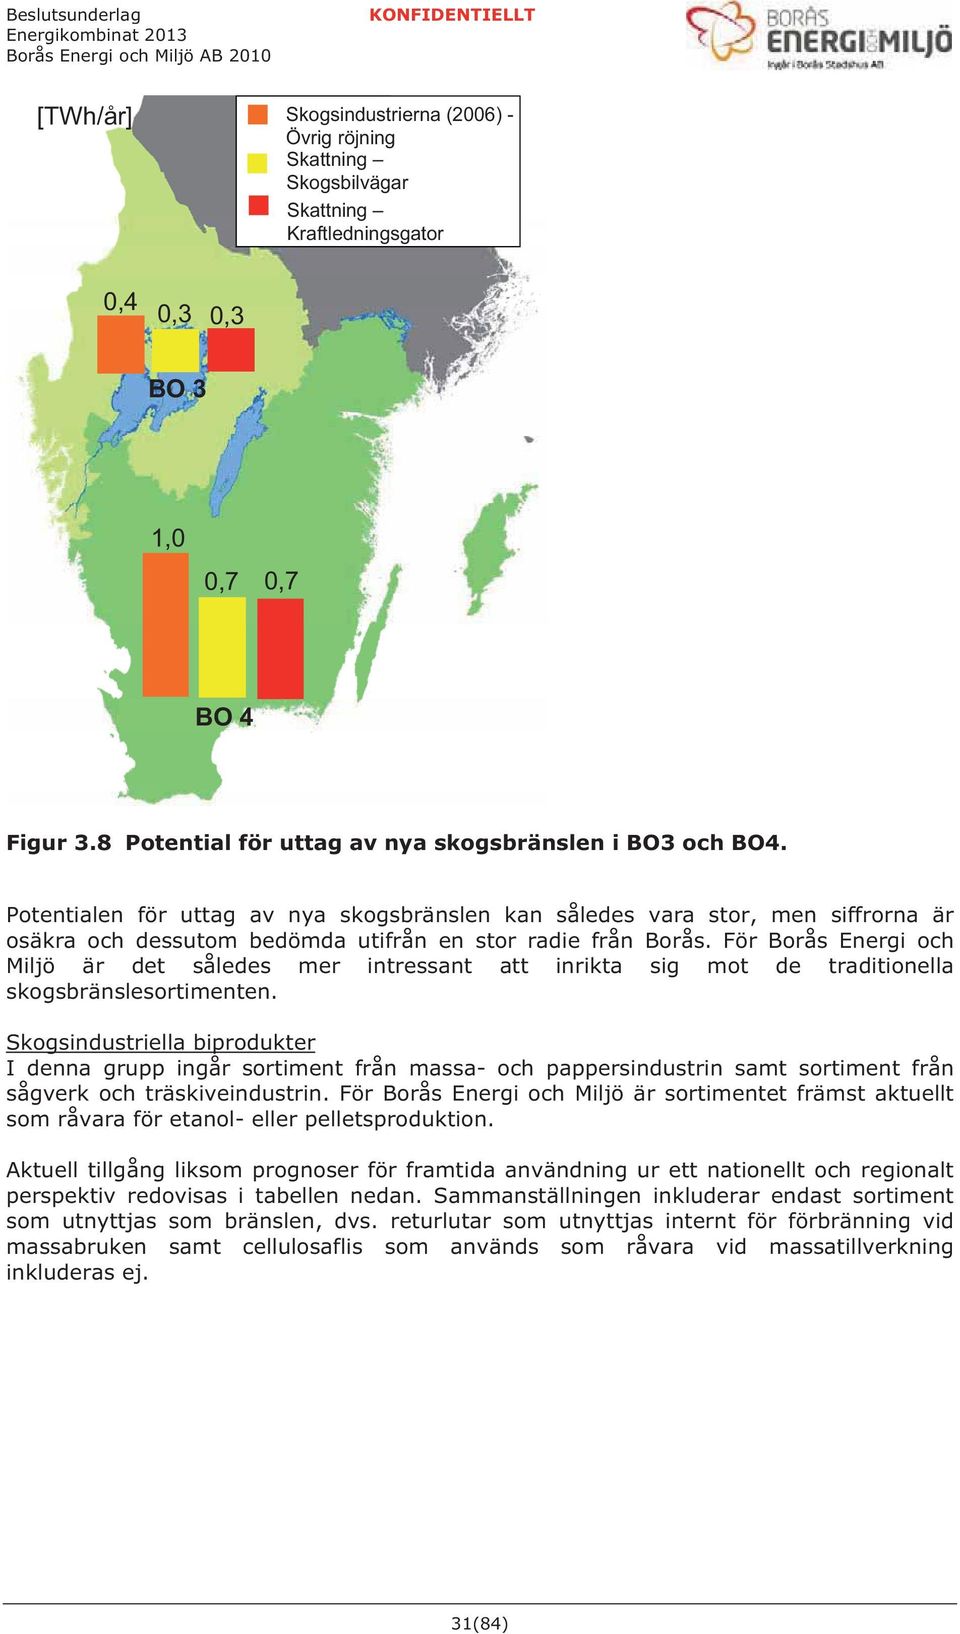 Potentialen för uttag av nya skogsbränslen kan således vara stor, men siffrorna är osäkra och dessutom bedömda utifrån en stor radie från Borås.